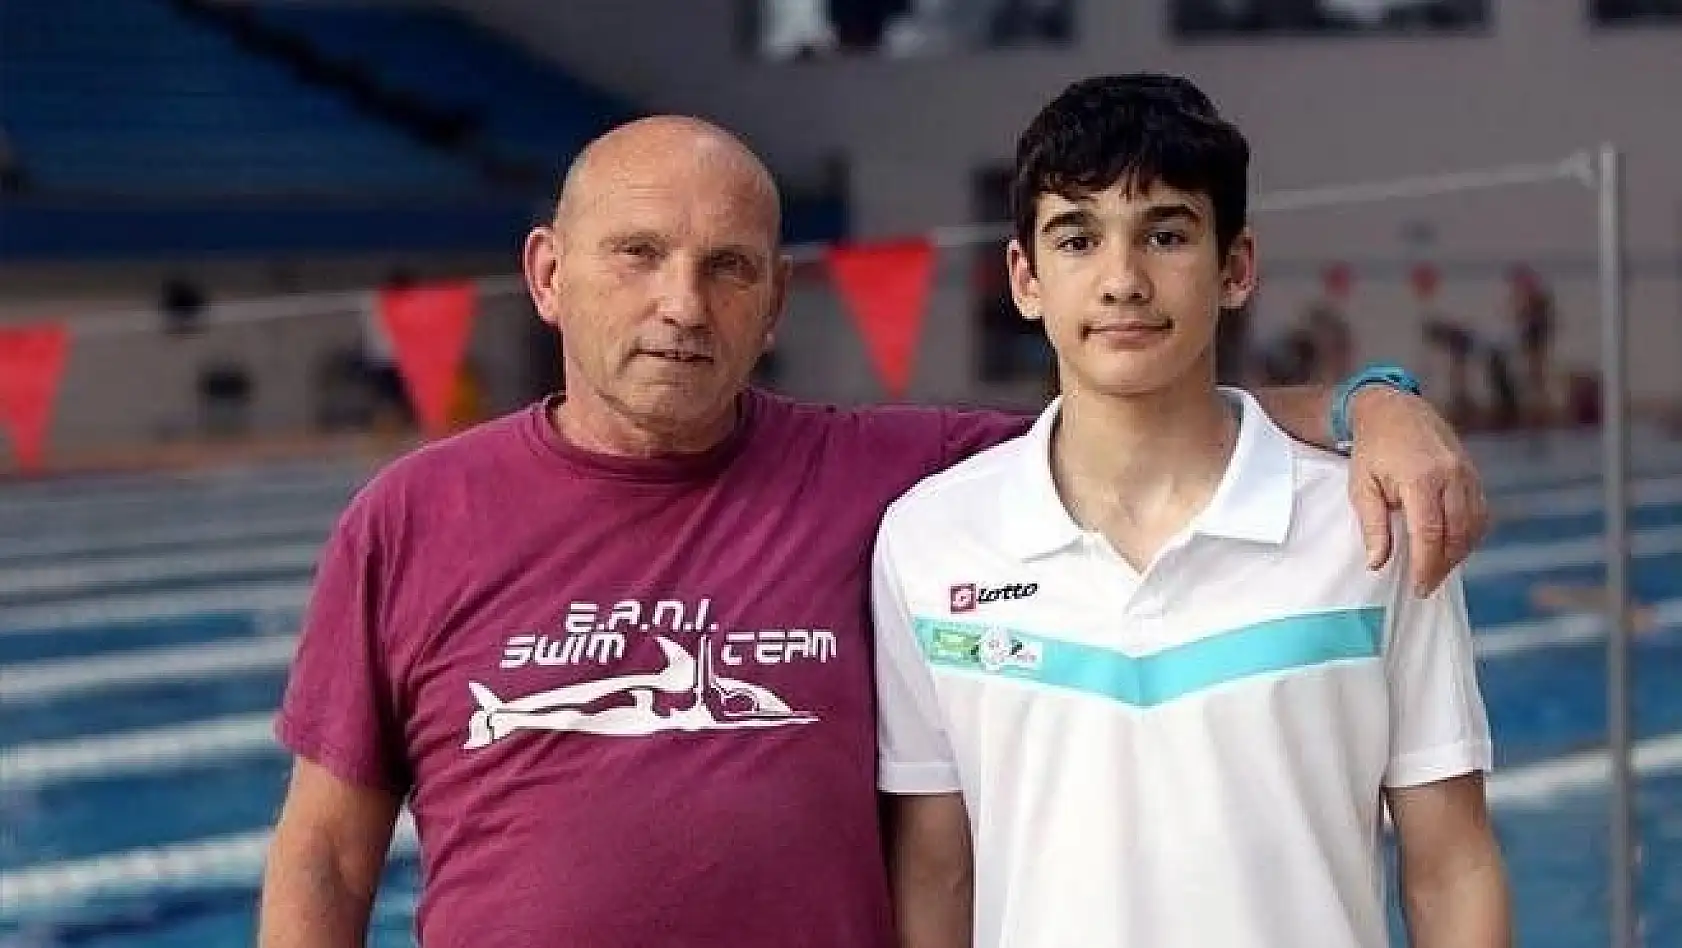 Kayseri'nin rekortmen yüzücüsü ve Antrenörü milli takım kampına gidiyor